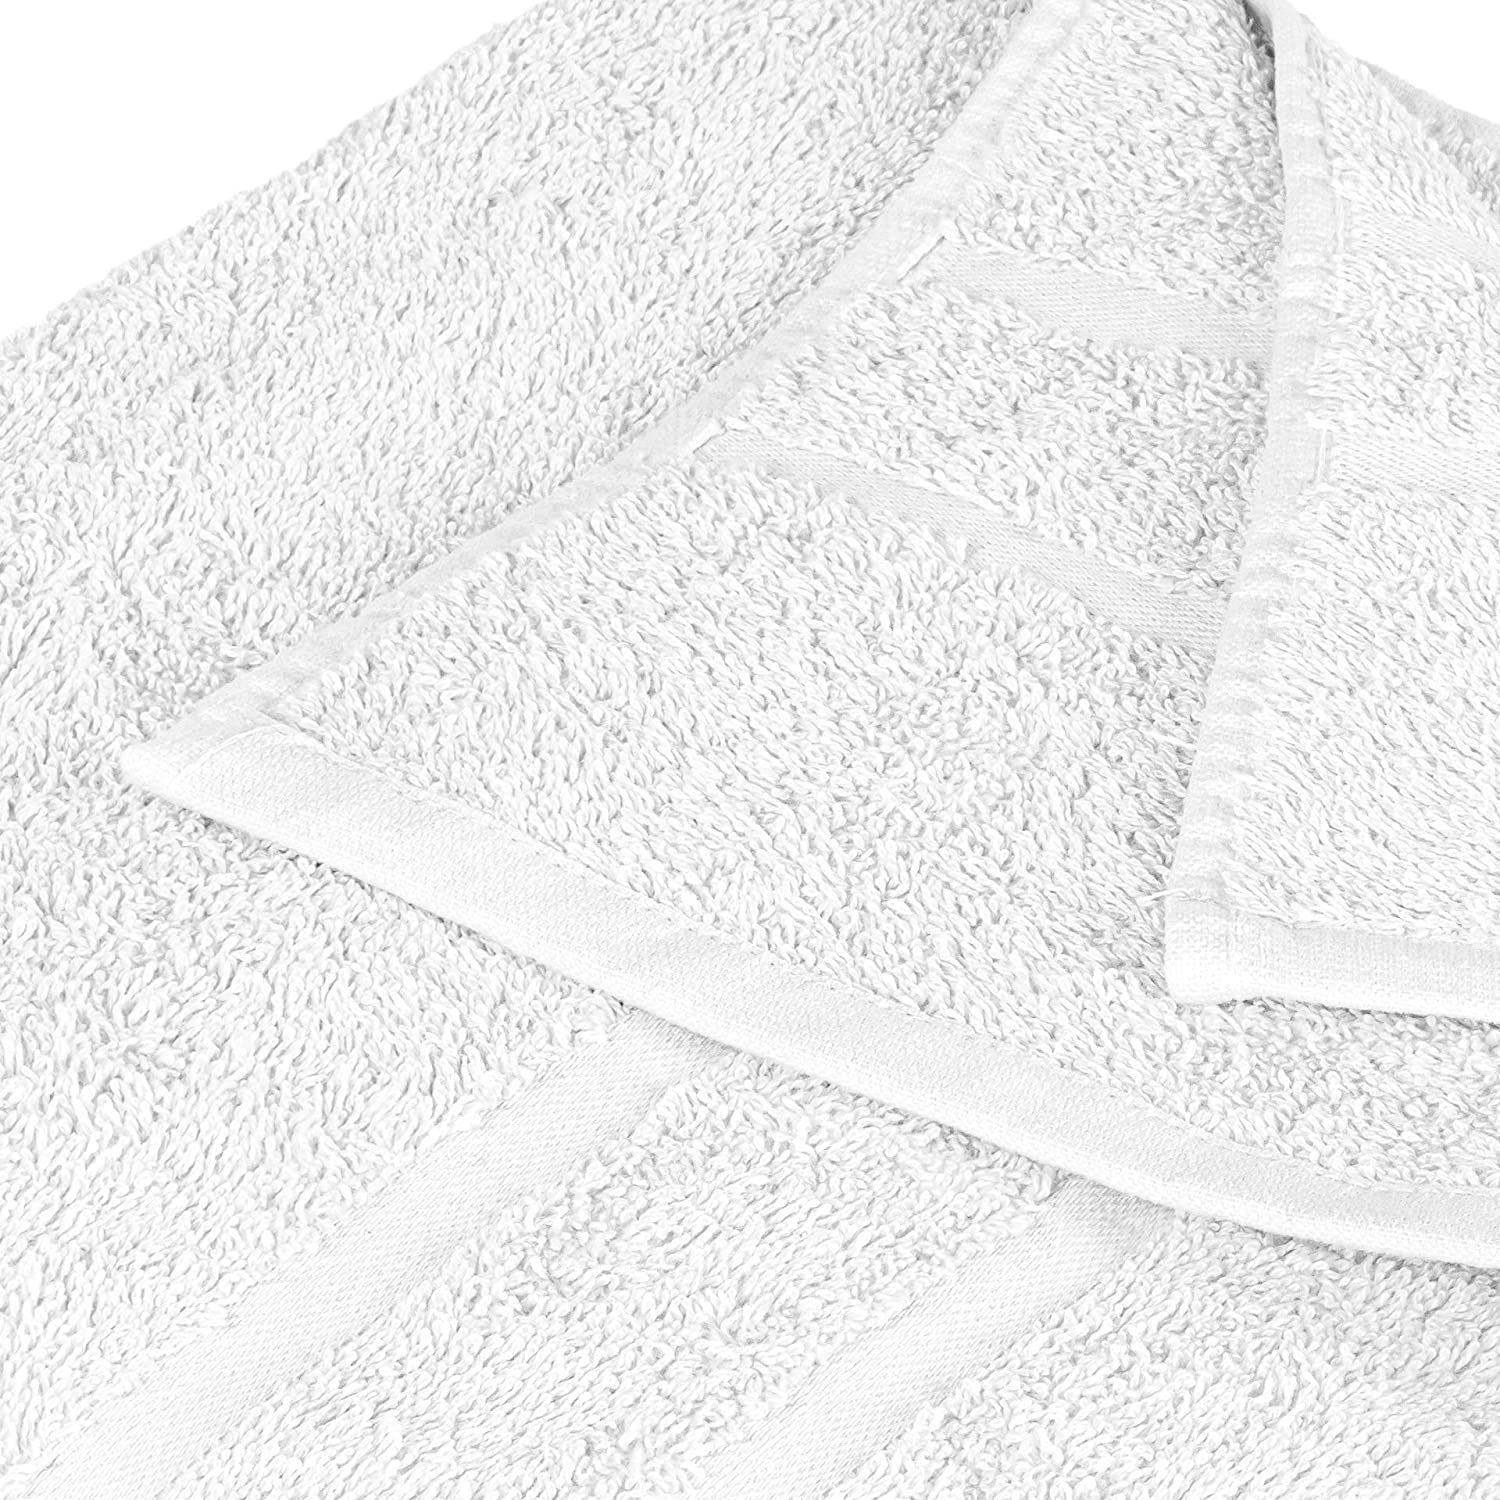 Teilig) GSM 100% 100% 2x (16 Set Handtuch als 2x 500 StickandShine Weiß Saunatücher Frottee Badetücher SET 16er Handtuch Handtücher in verschiedenen Baumwolle Gästehandtuch 4x 4x 4x Duschtücher Baumwolle Pack, Farben